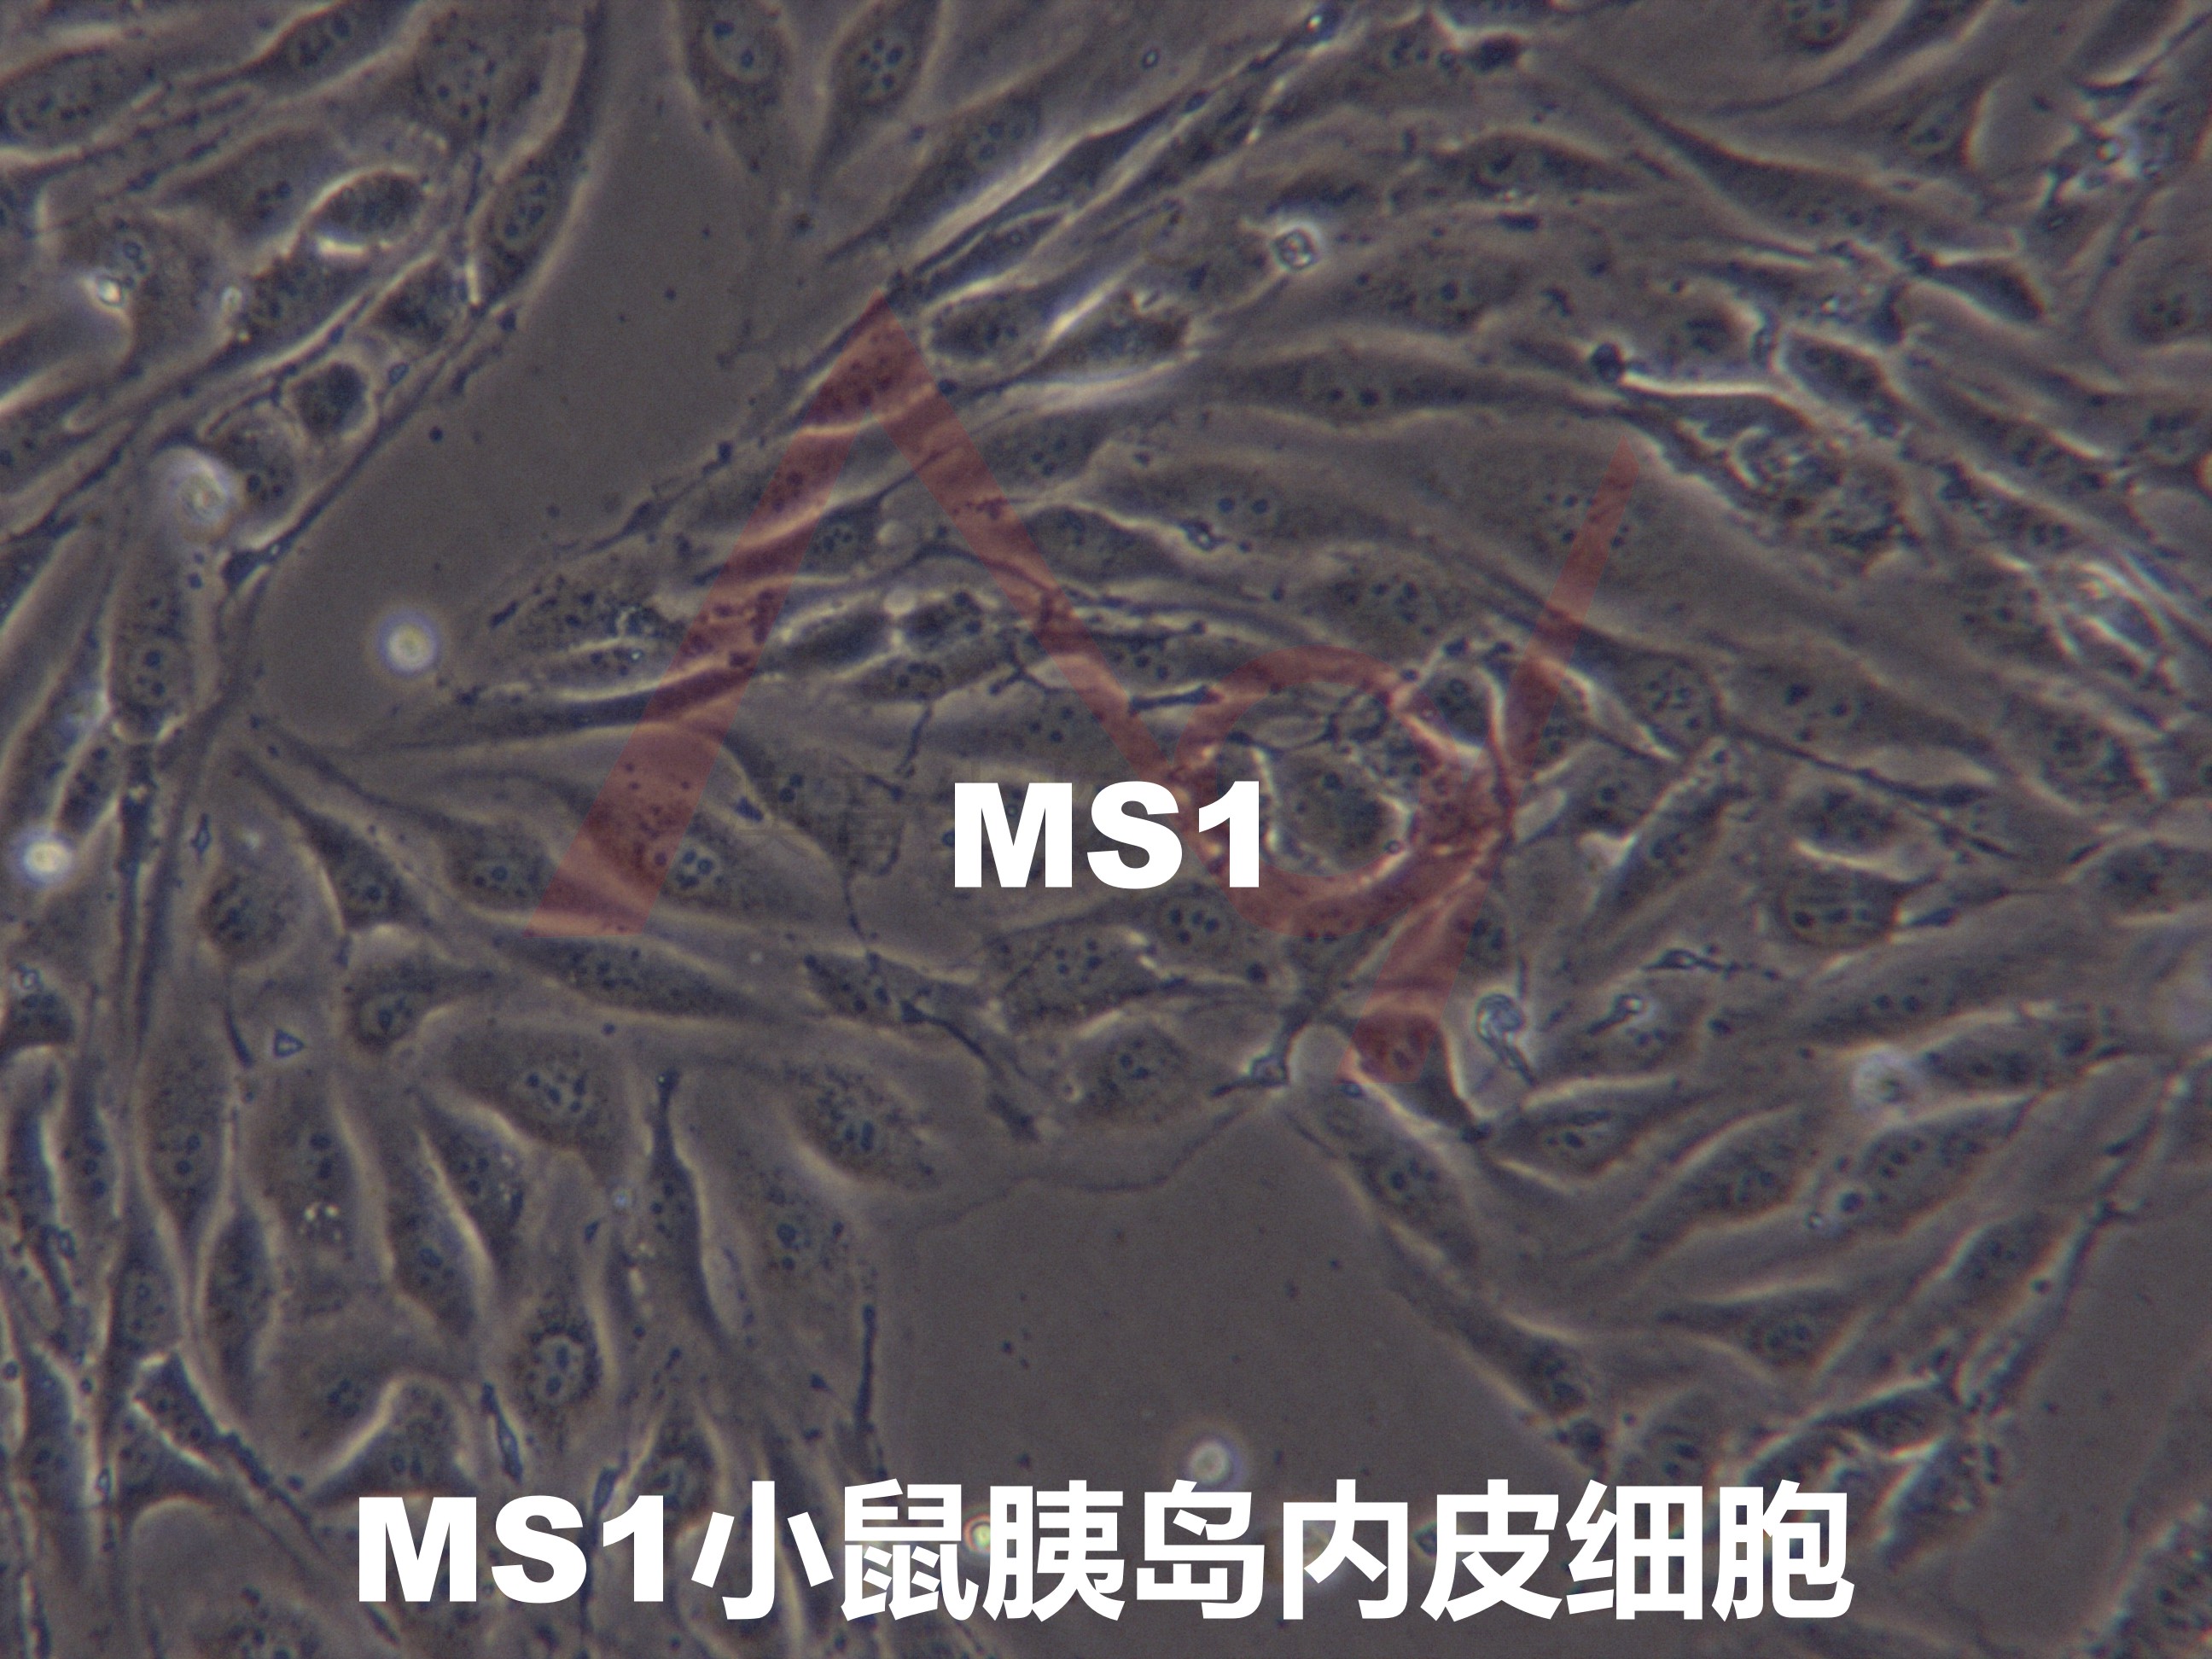 MS1[MS1；MILE SVEN 1; Mile Sven 1; MILE SVEN1]小鼠胰岛内皮细胞